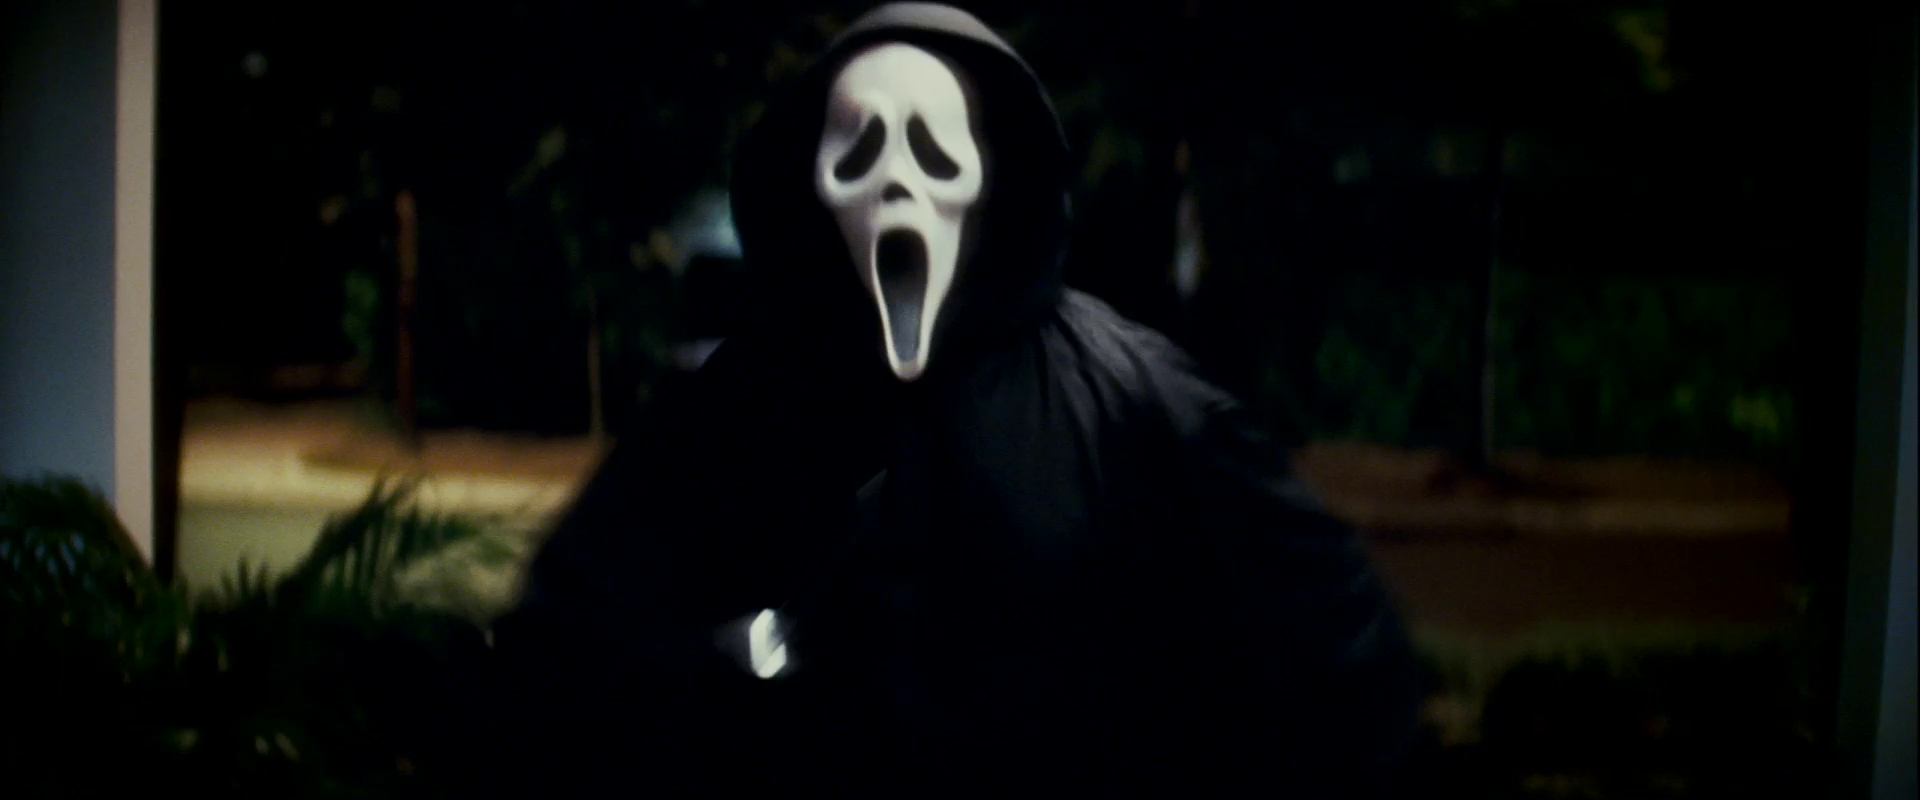 Scream (serie di film) - Wikipedia